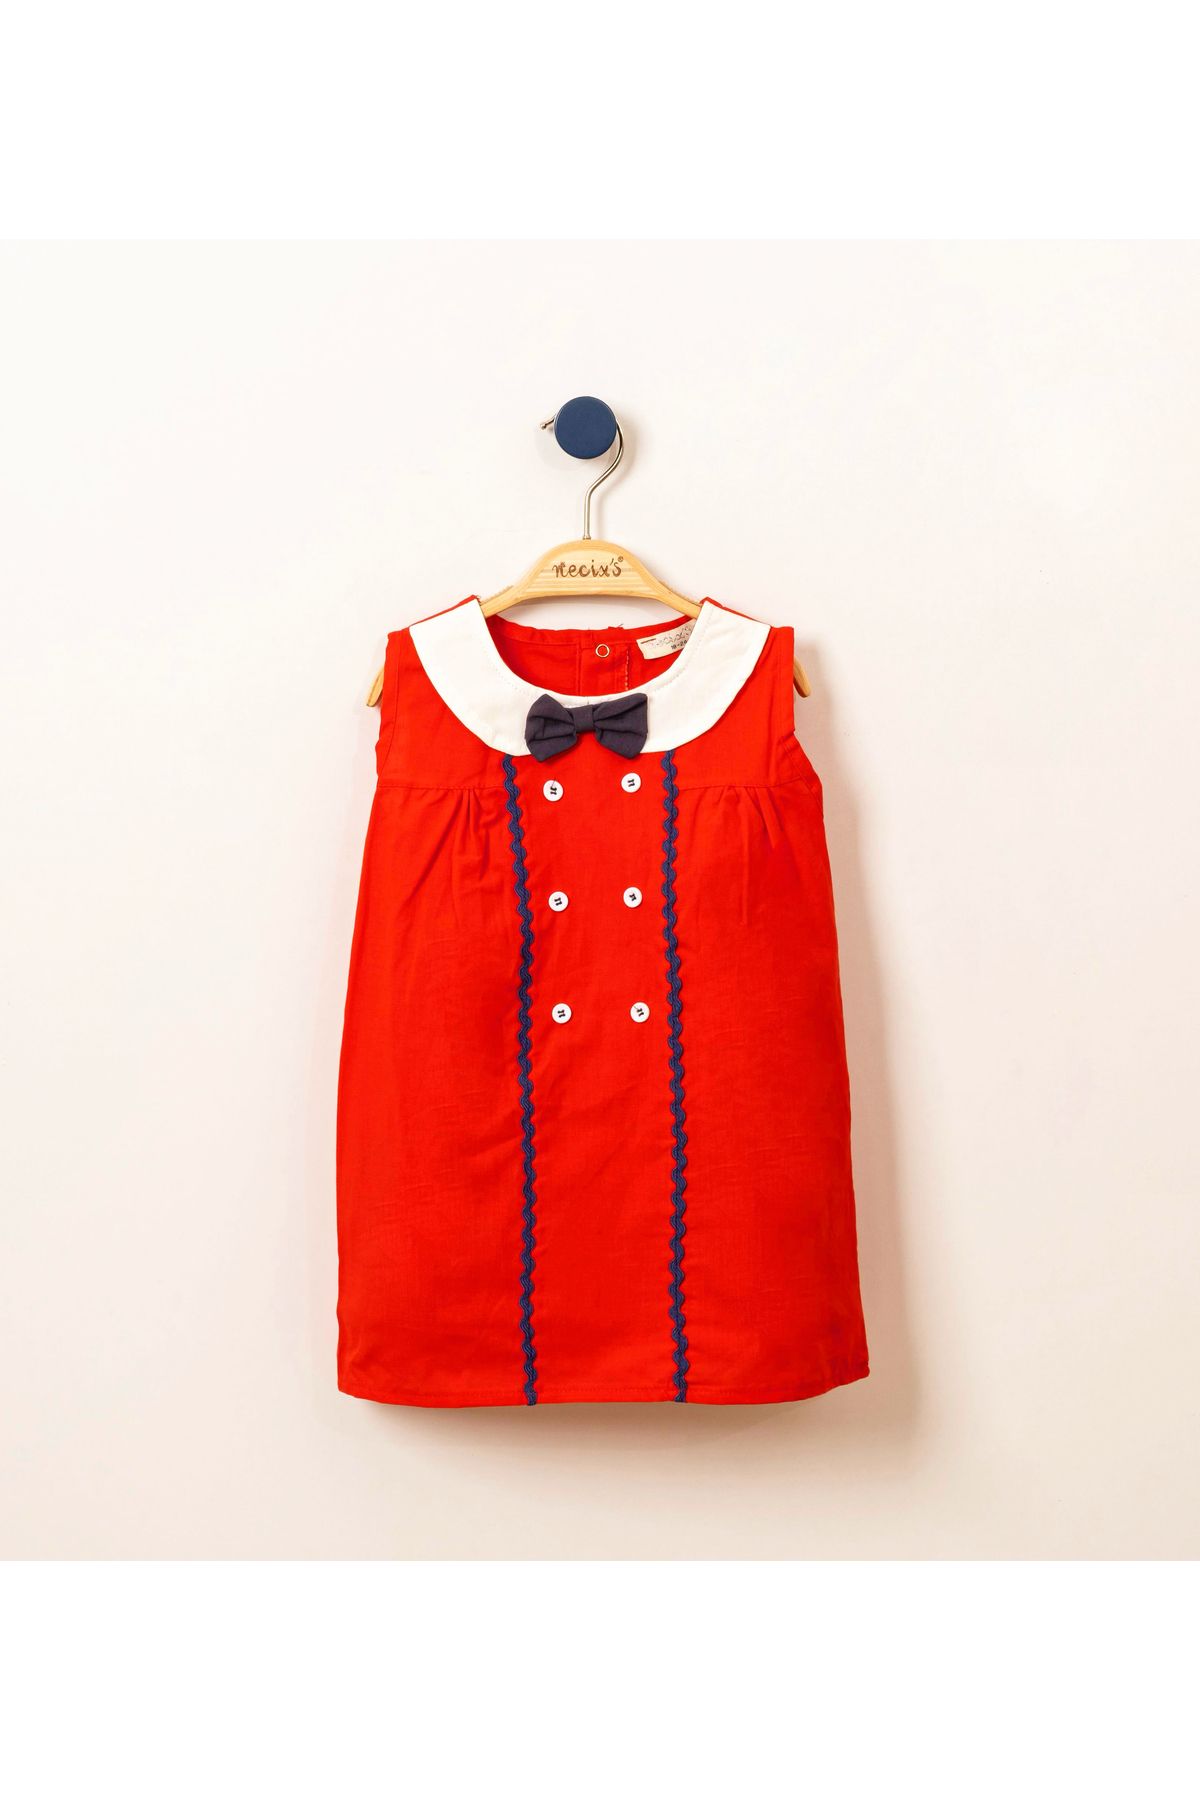 Necix's Kırmızı düğmeli marine elbise